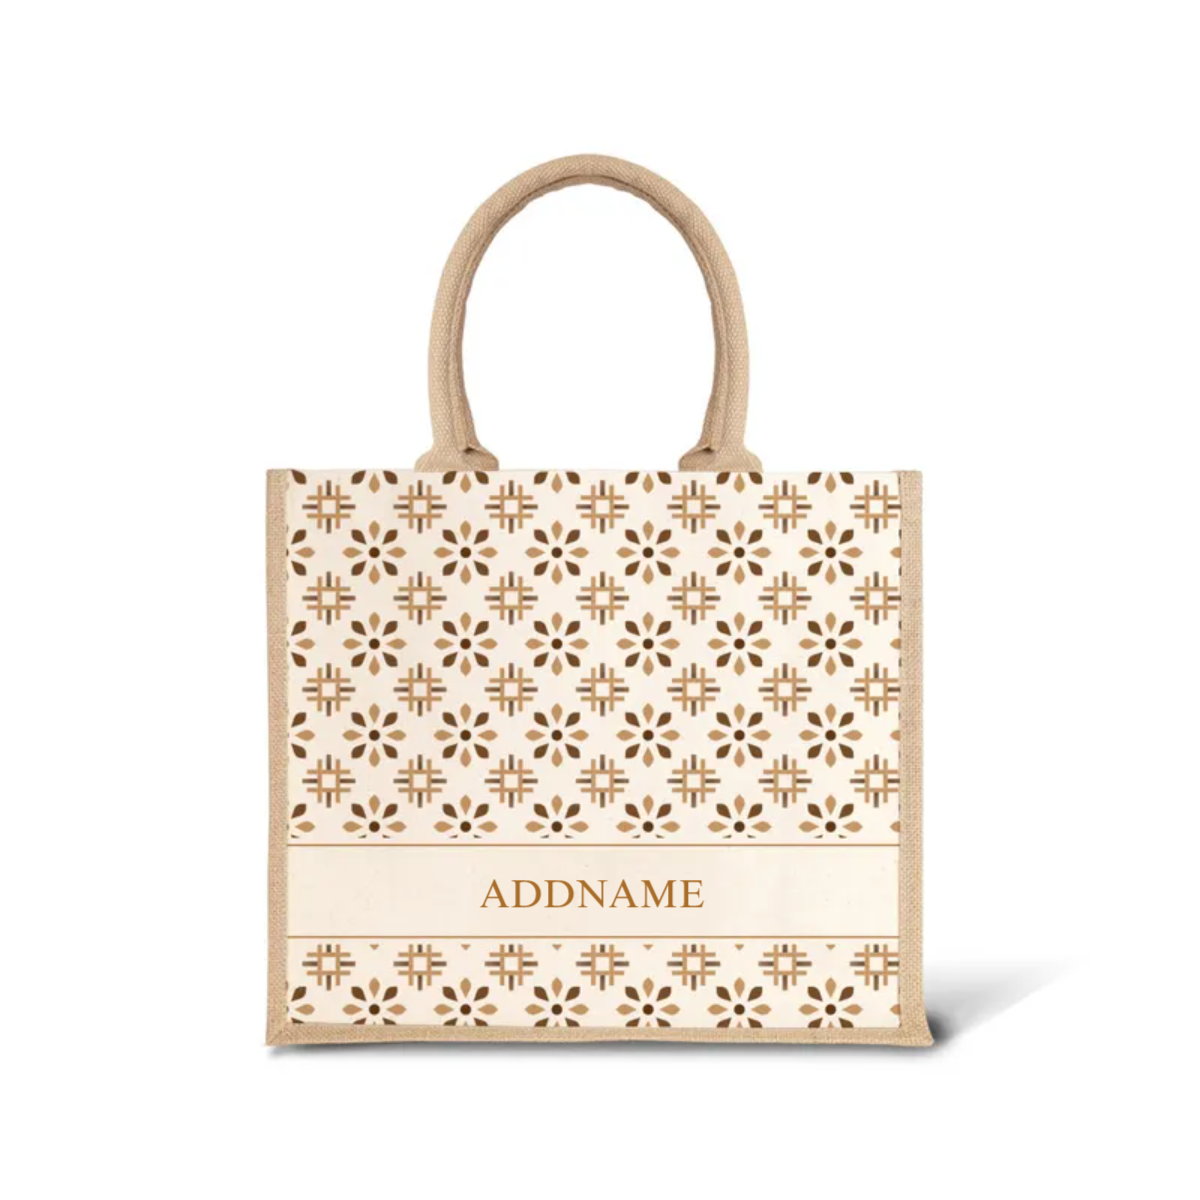 Moroccan Series - Tawny Brown Jute Bags